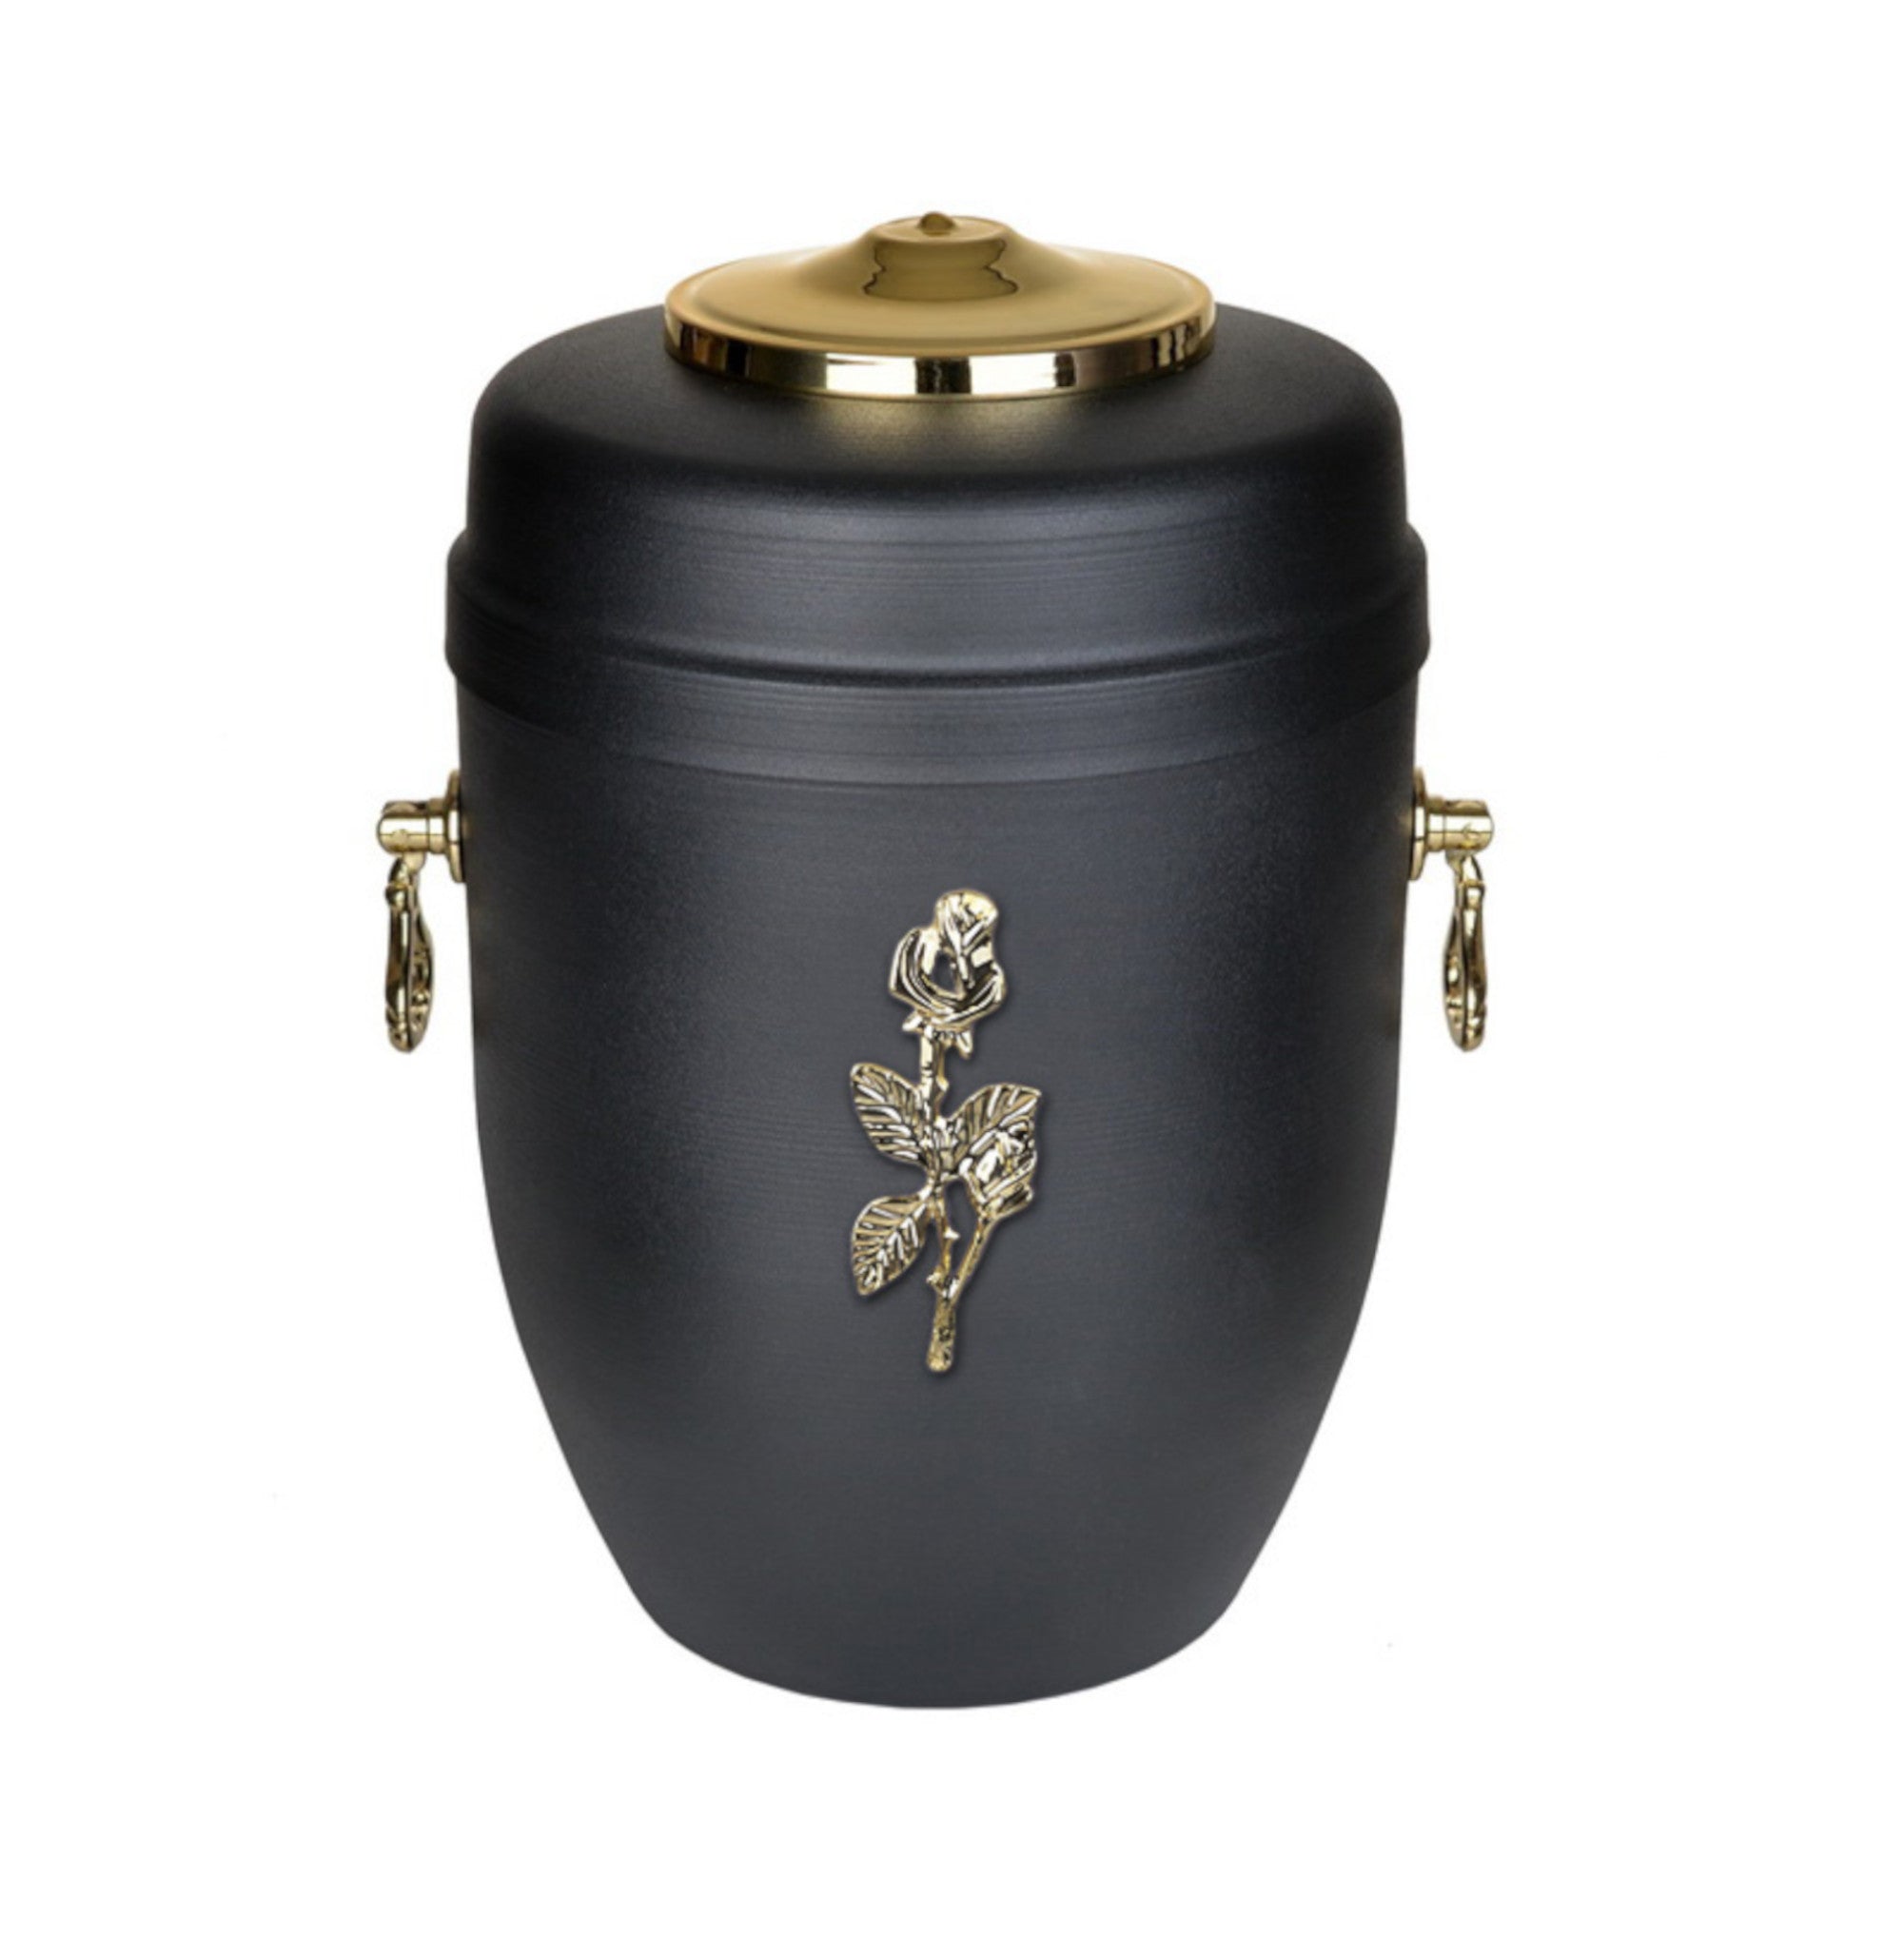 Metal Cremation Adult Ashes Urn, Black urn